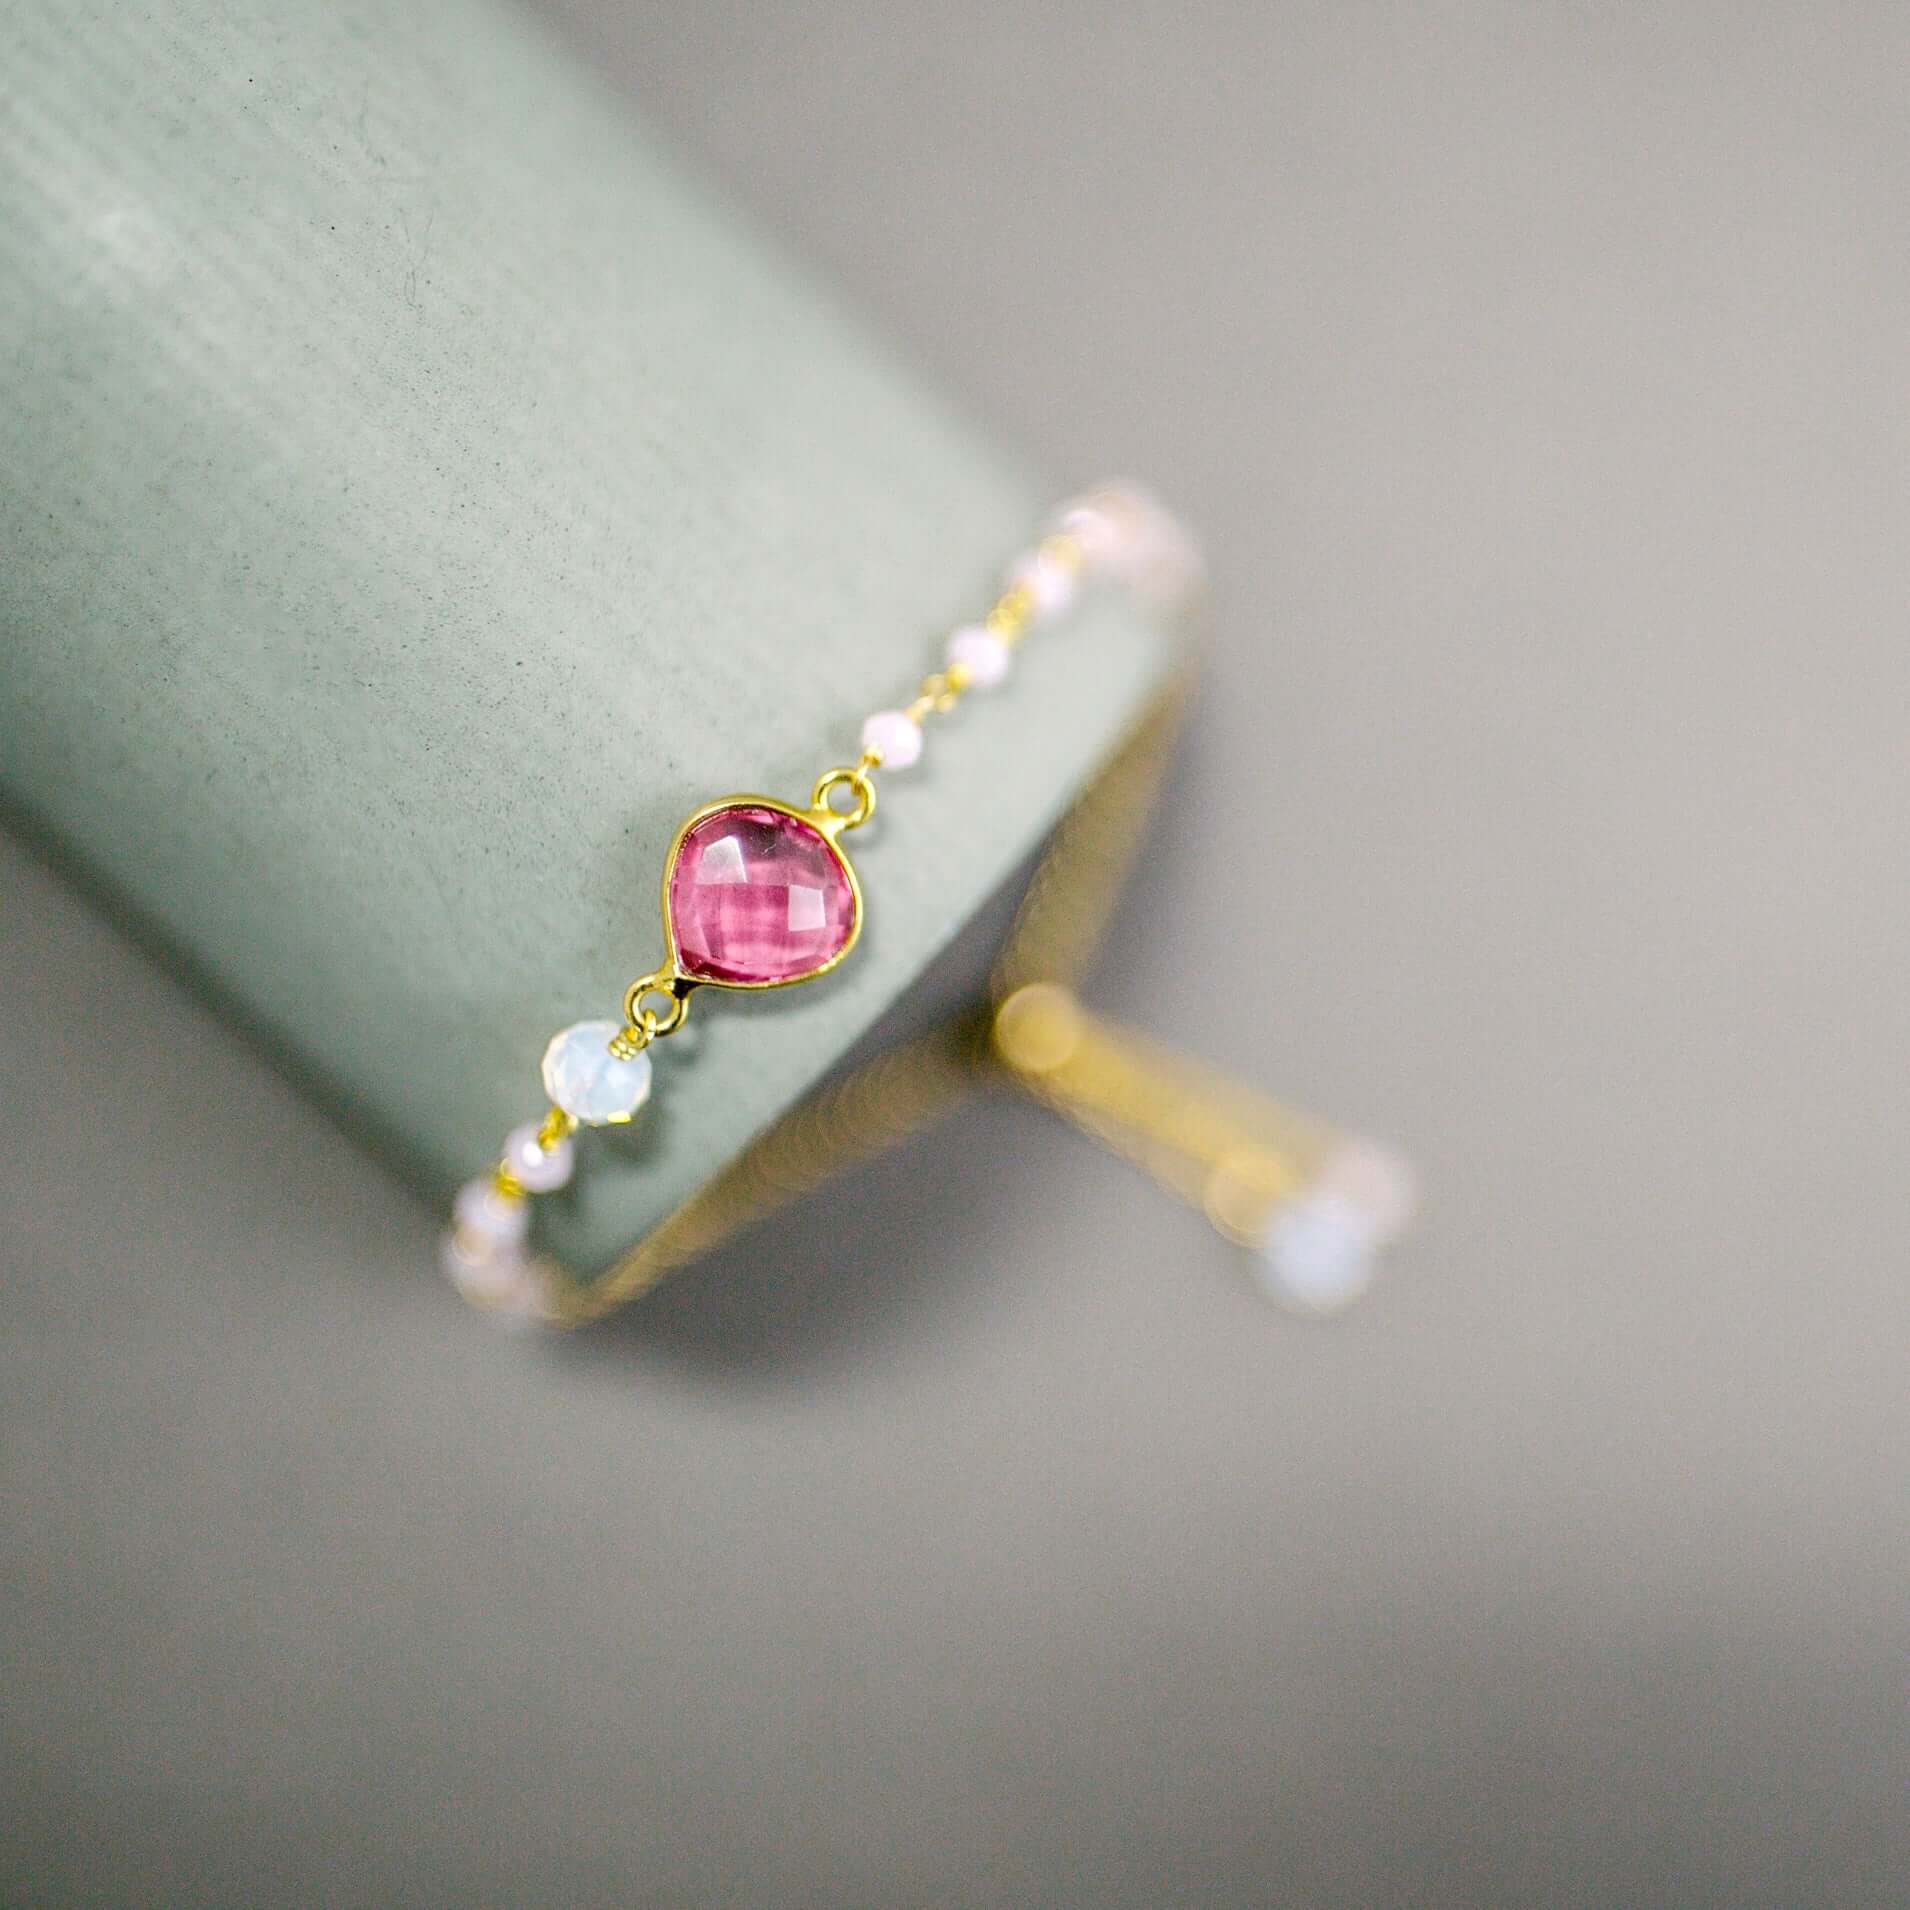 Adjustable Slider Bracelet  Authentic Pink tourmaline quartz bezel-set heart gemstone with rose quartz and opal quartz accent stones